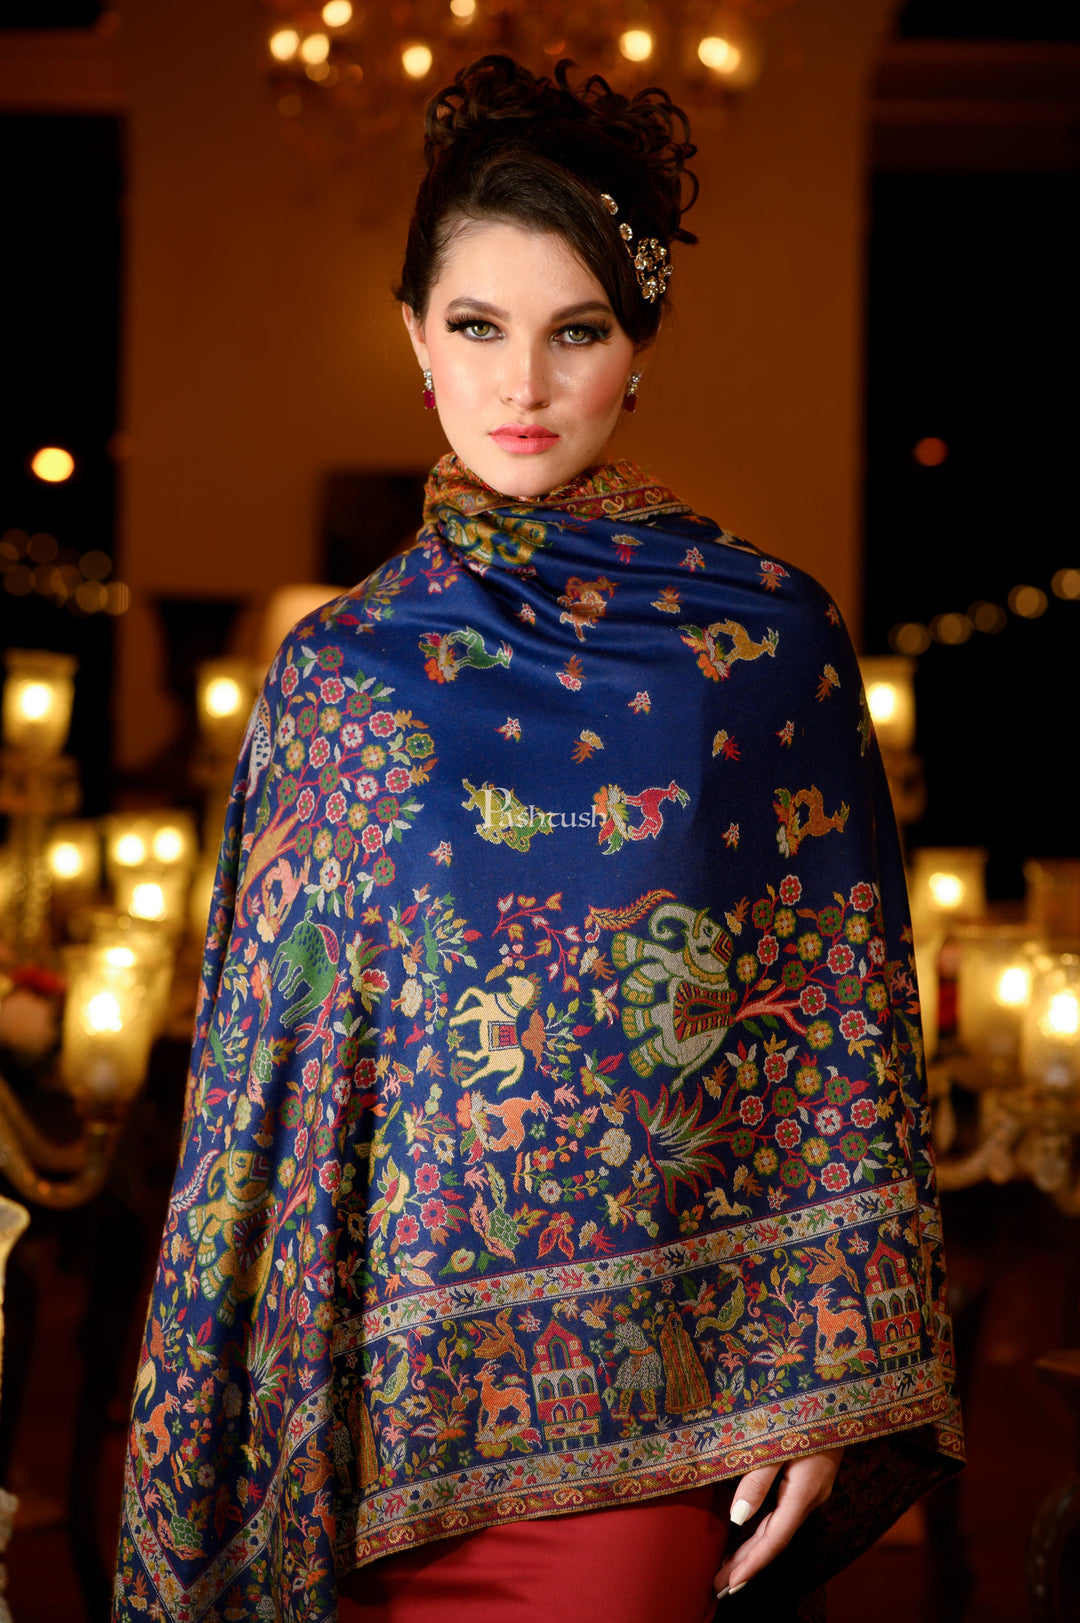 Pashtush India Womens Shawls Pashtush Womens Faux Pashmina, Royal Bagh Design, Blue